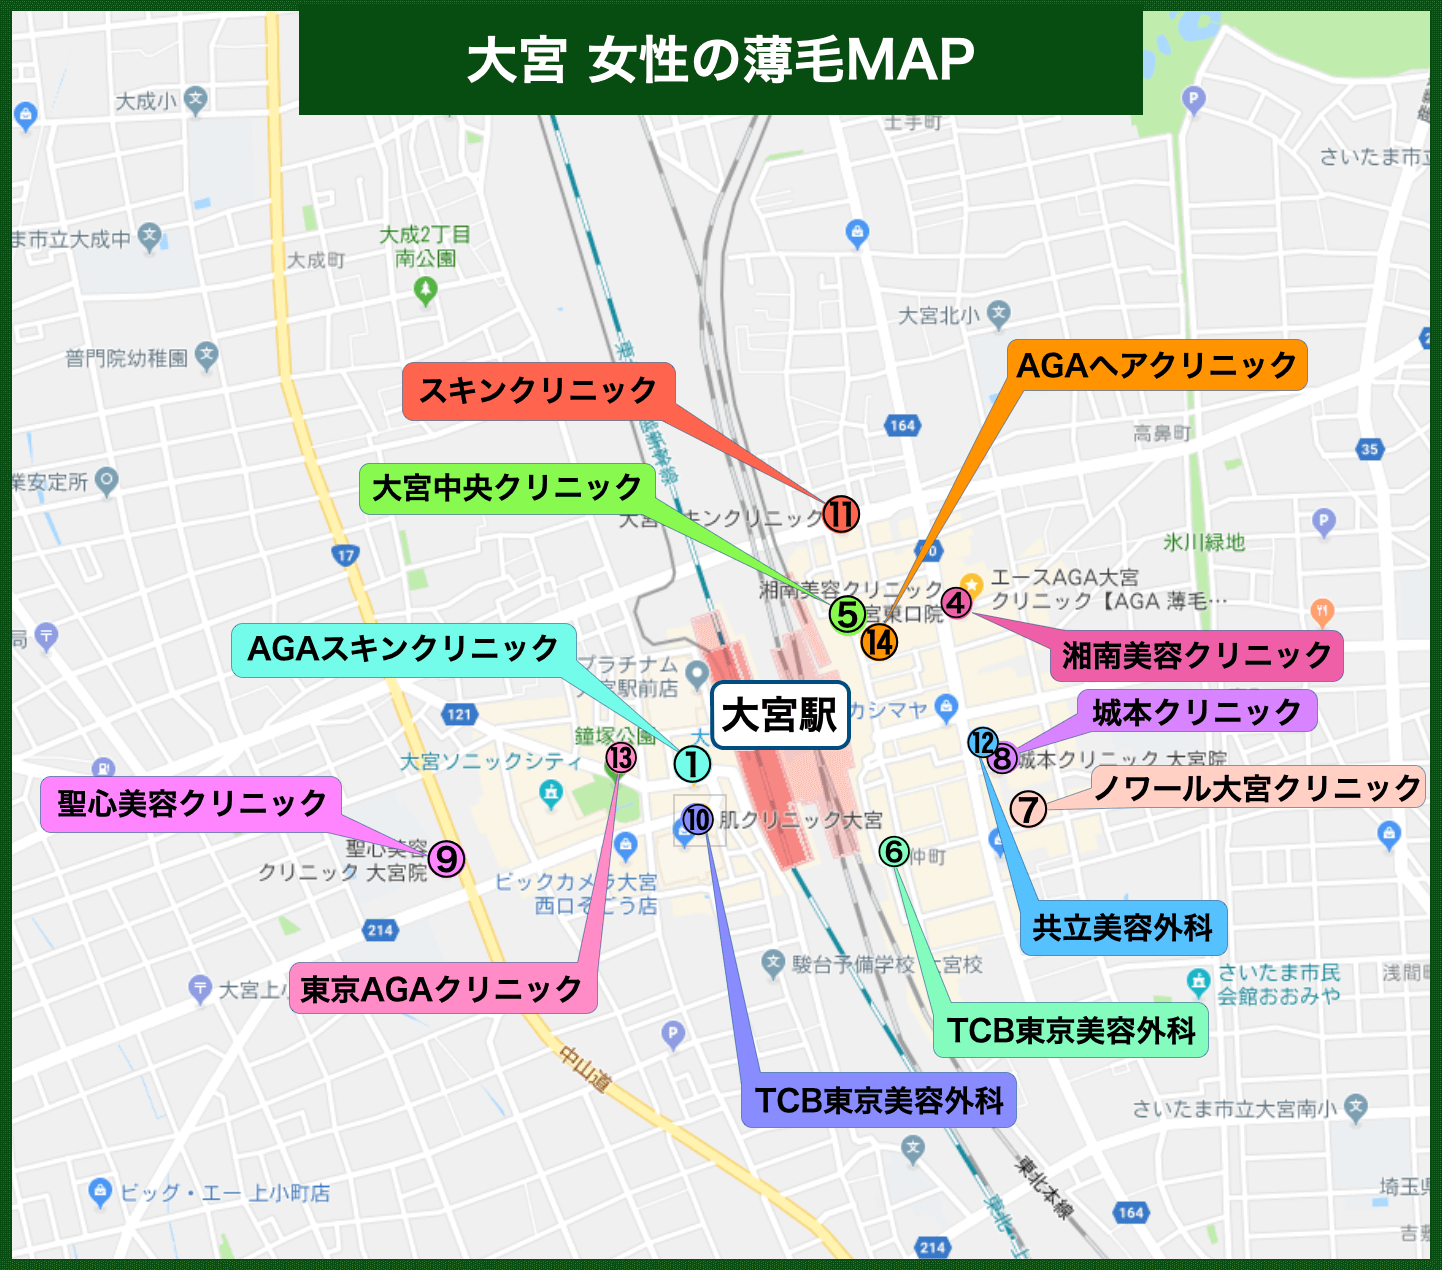 大宮駅女性の薄毛MAP